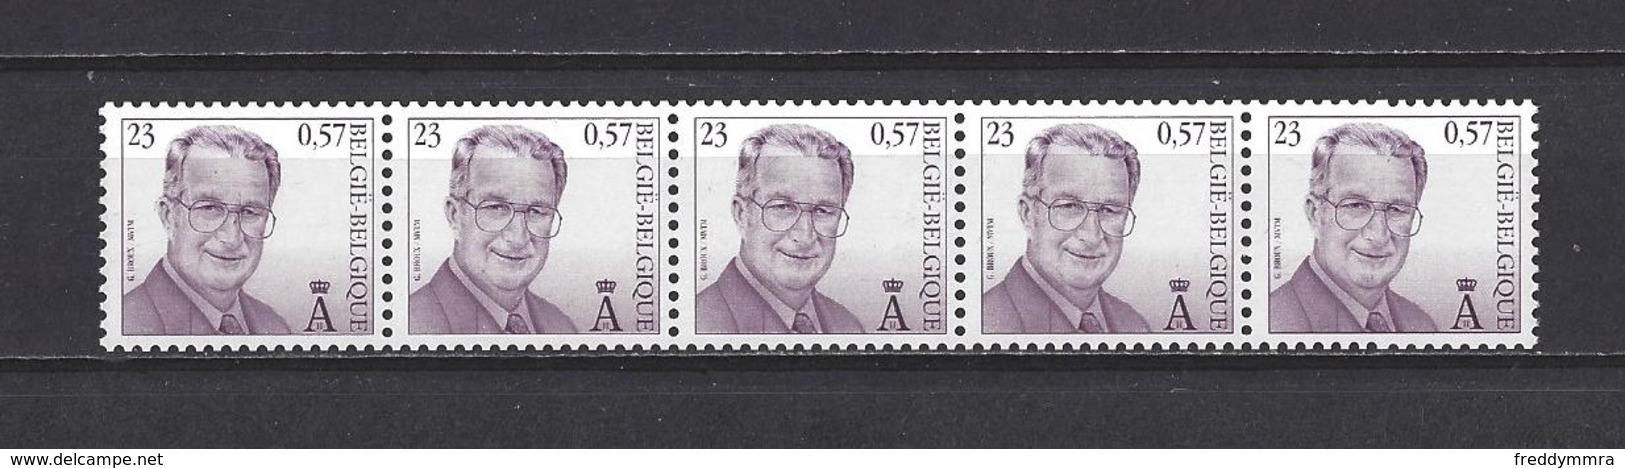 Belgique: R102a ** 4 Chiffres - 0450 - Coil Stamps